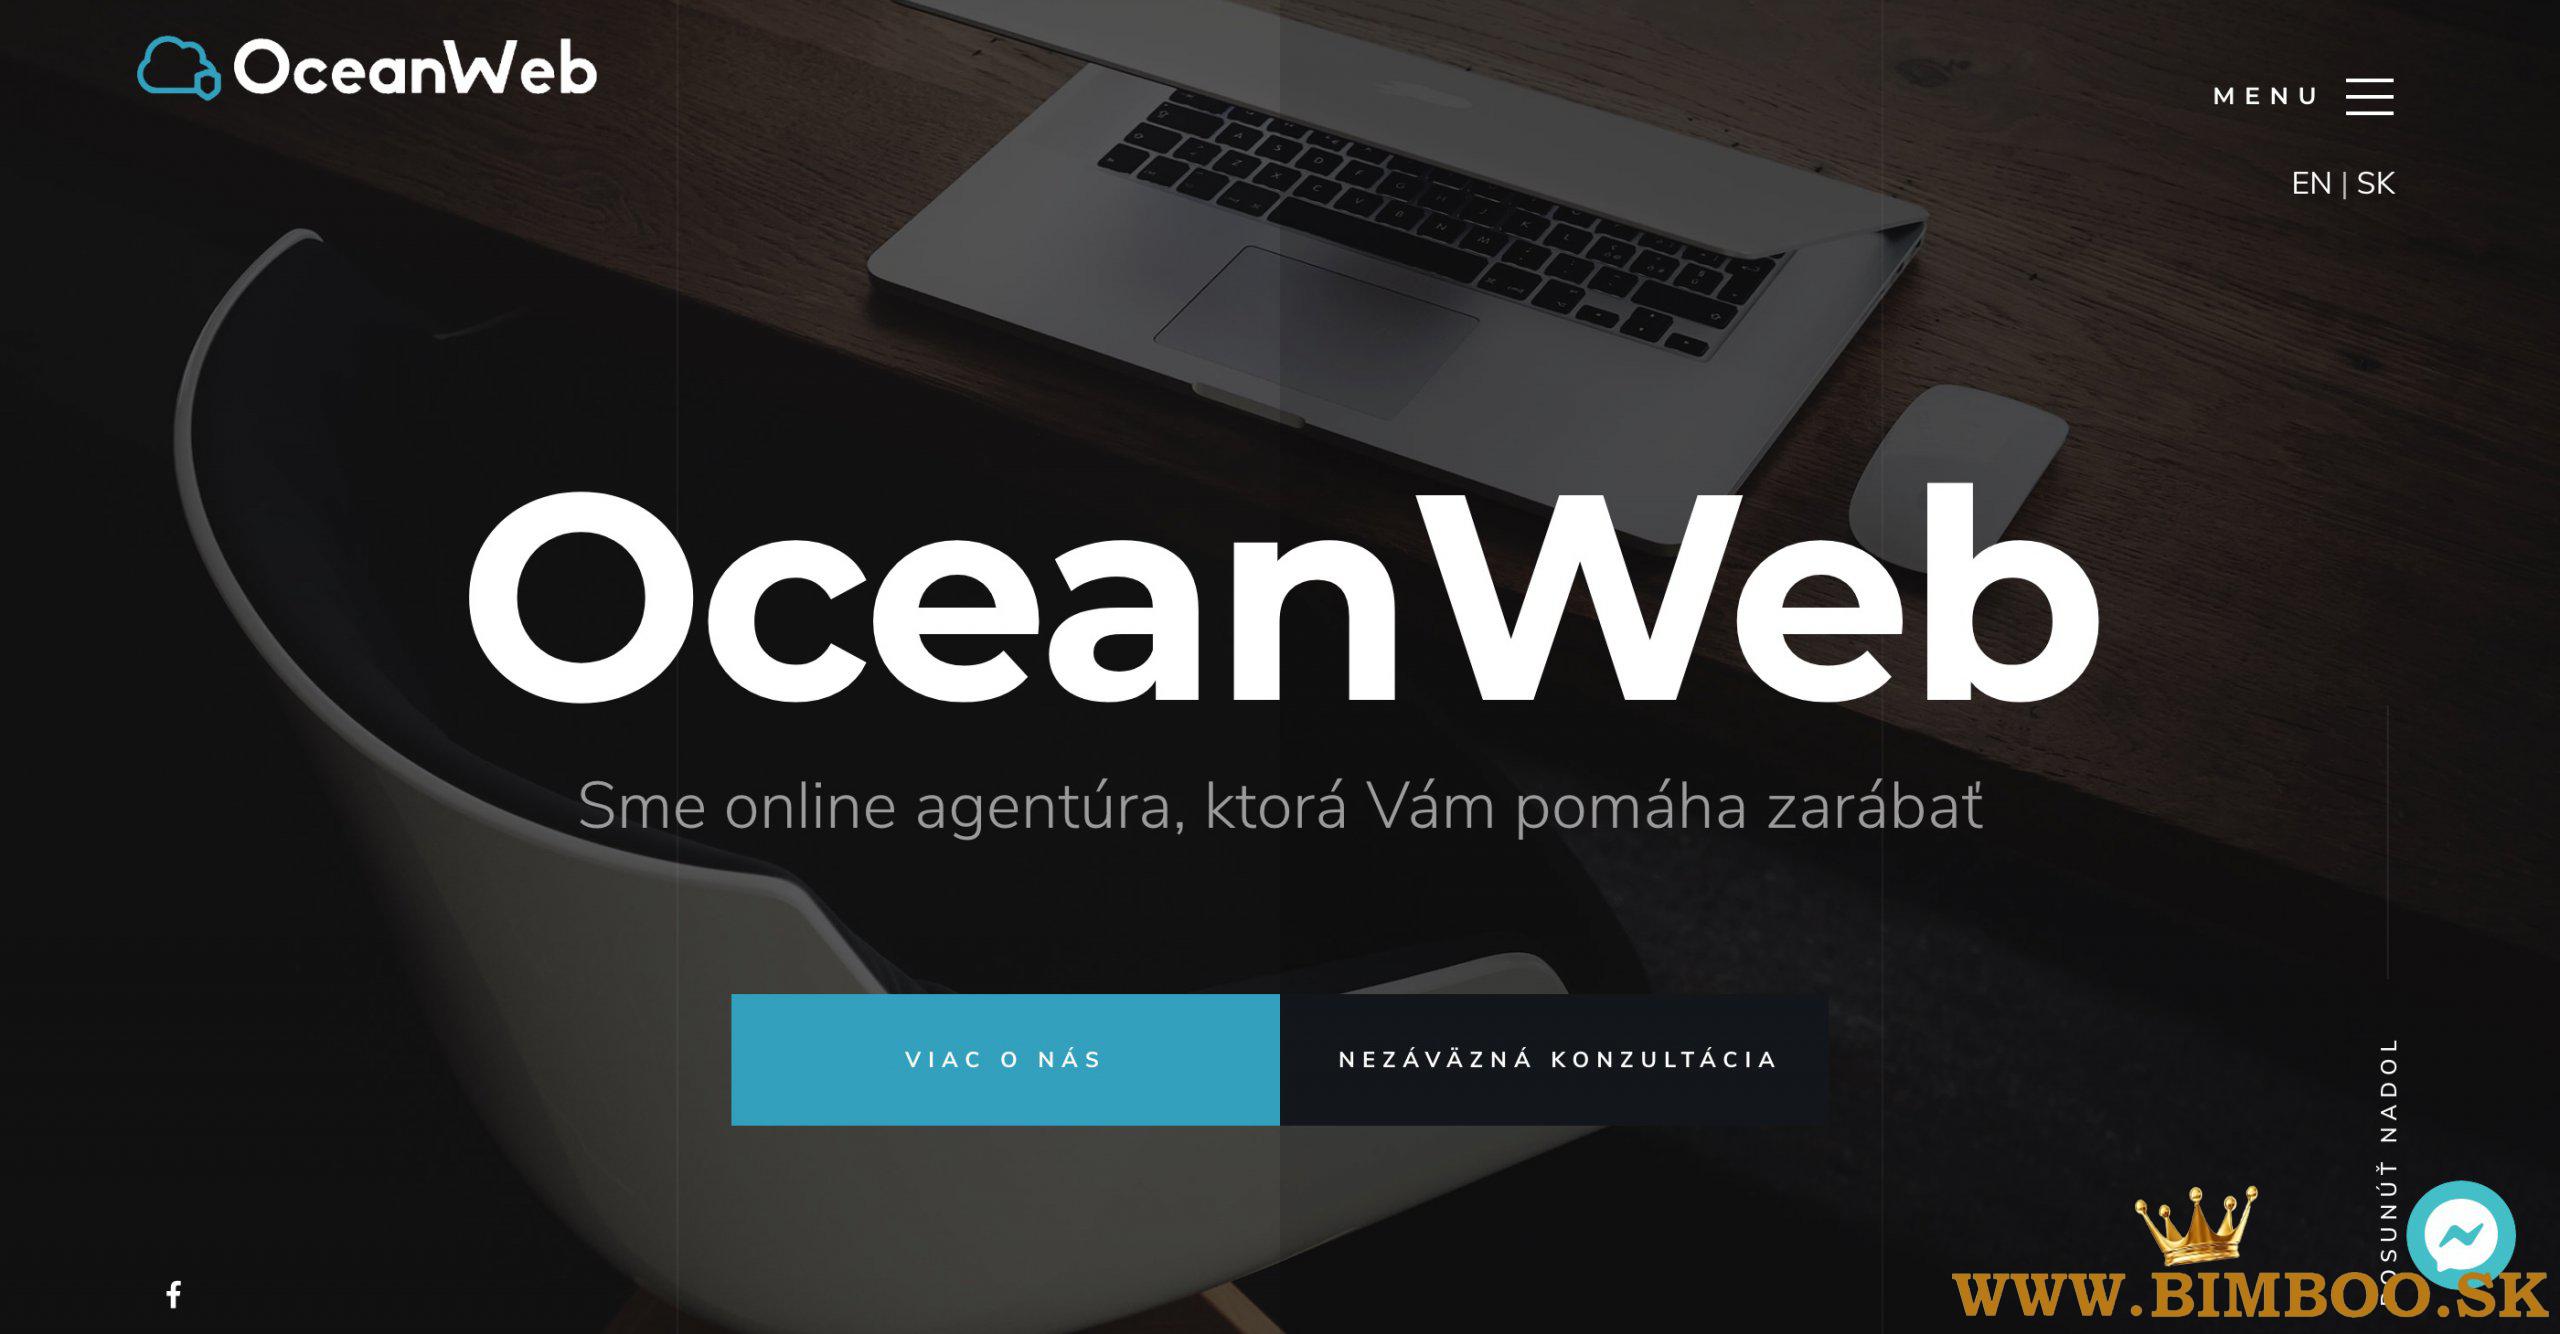 OceanWeb.sk